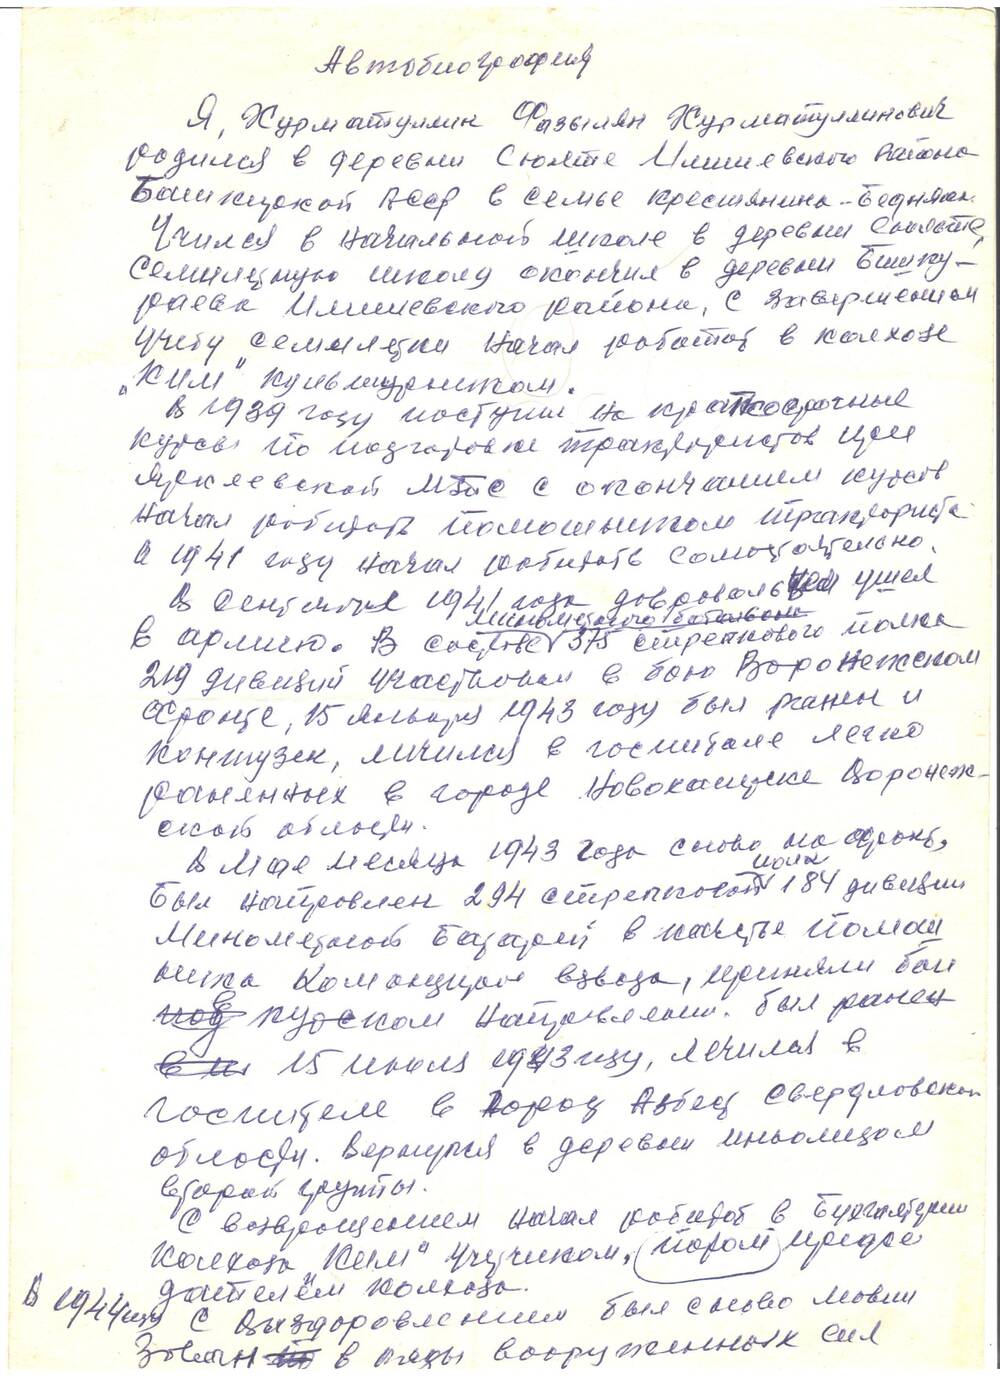 Автобиография - написано от руки Хурматуллиным Фазыляном Хурматуллиновичем. 2 листа. 1960-е гг.